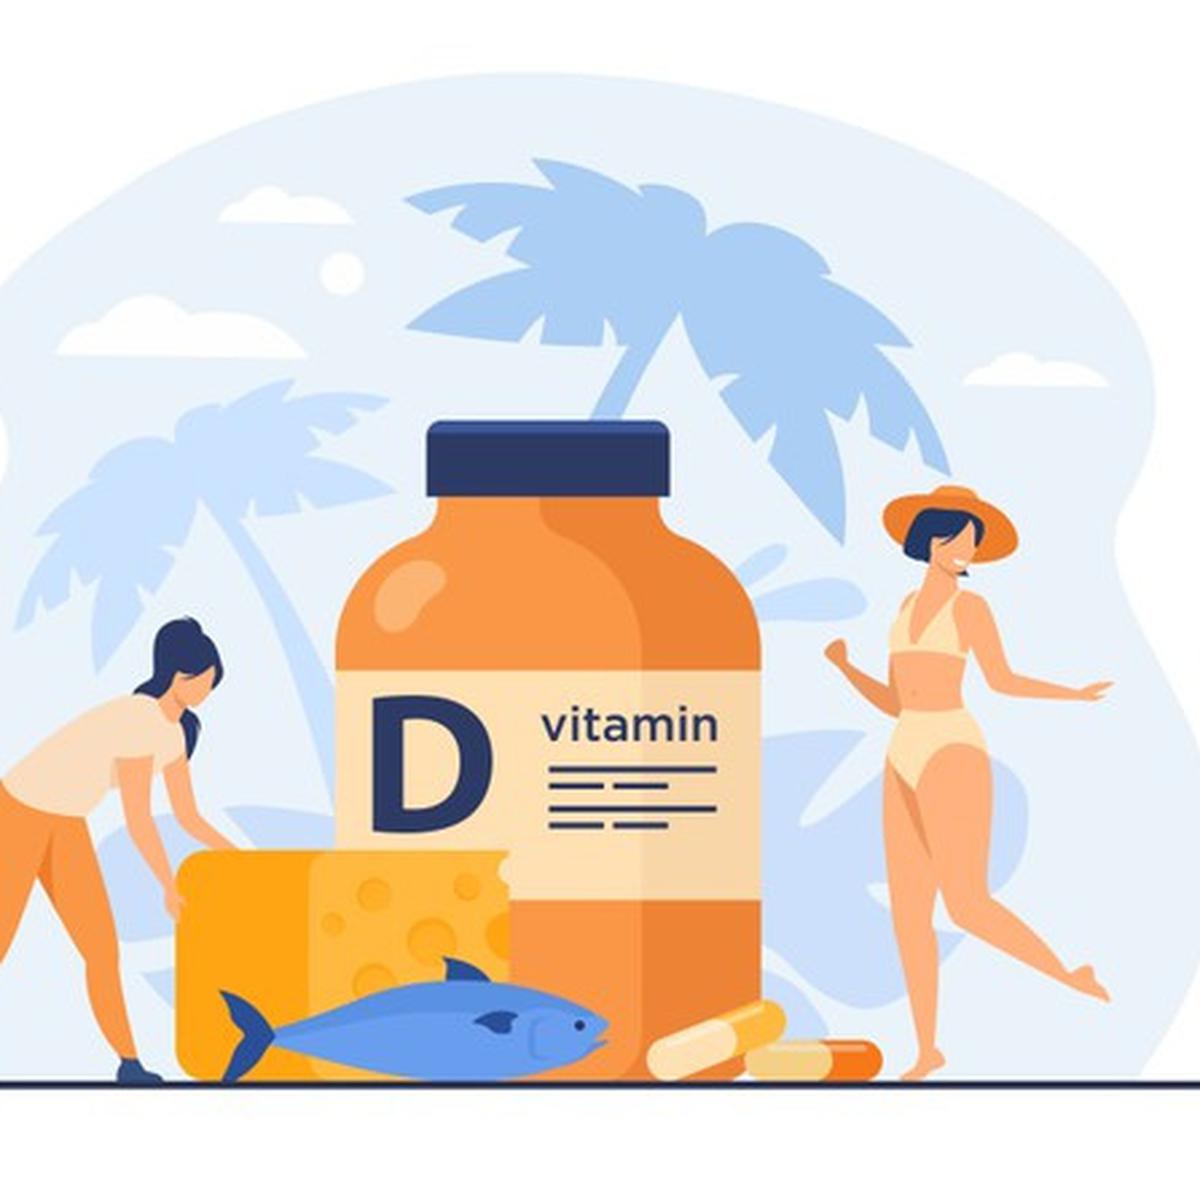 Apa saja peran vitamin d bagi manusia